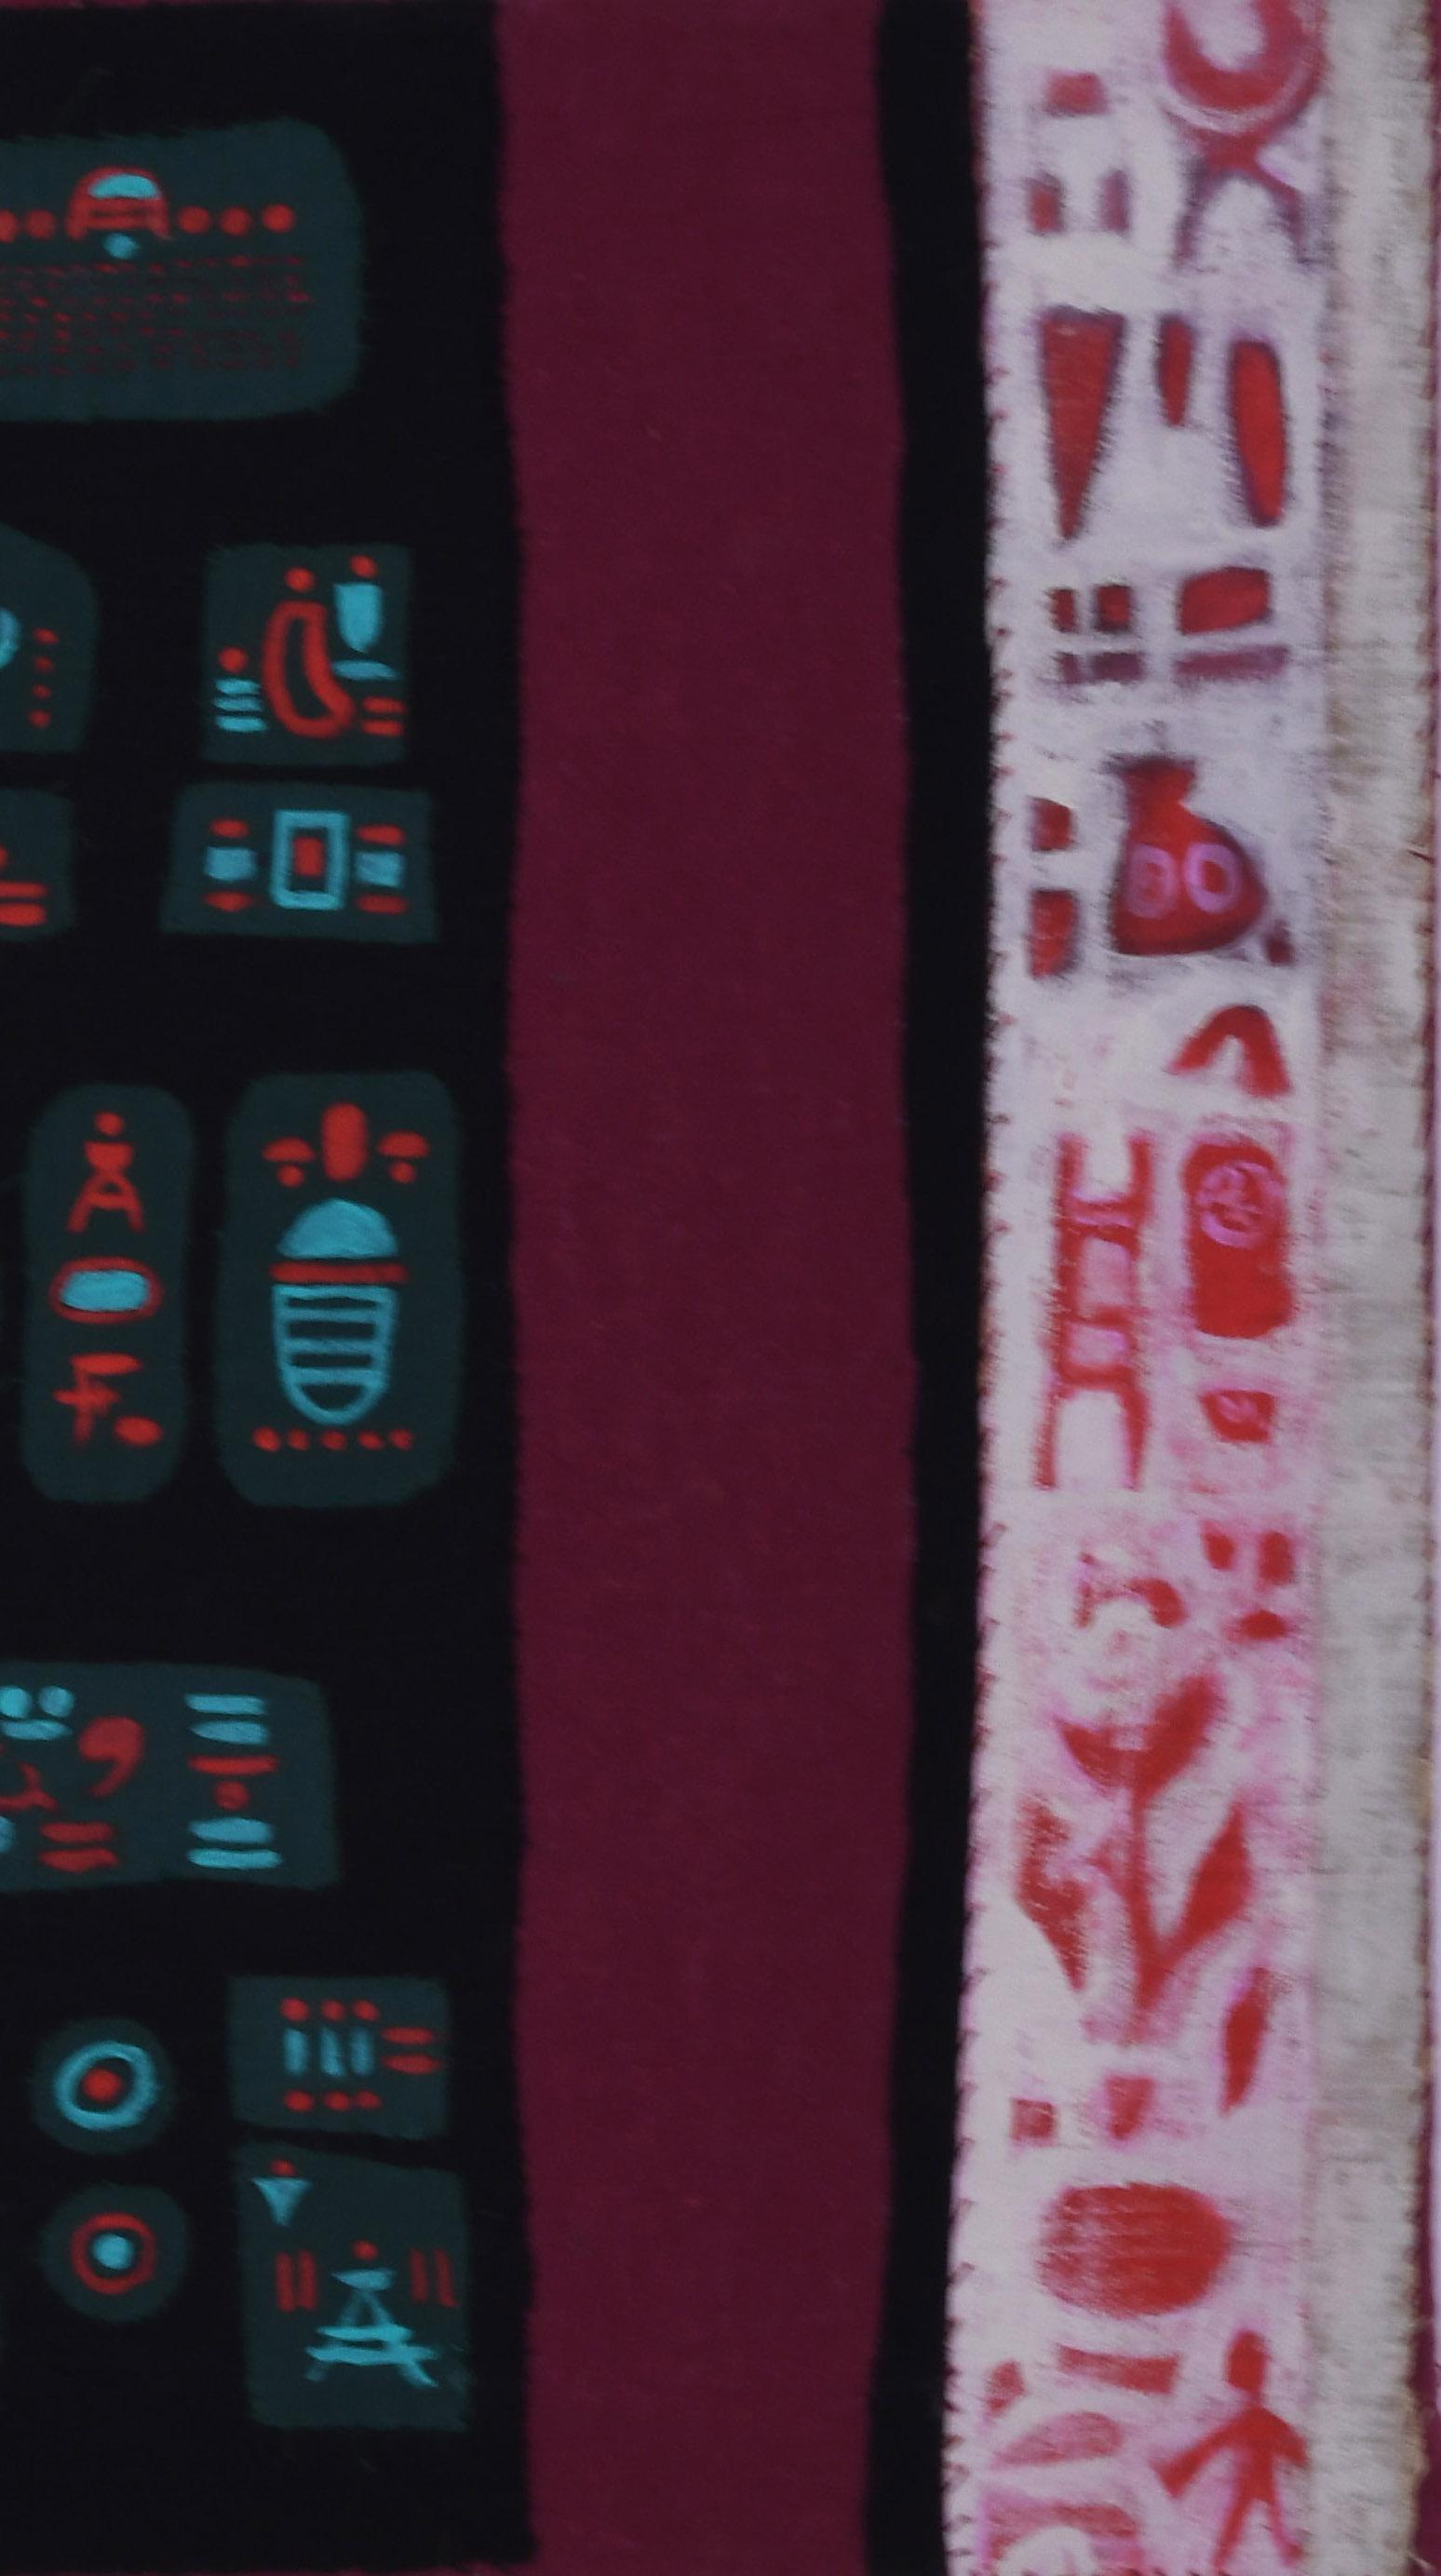 Chaco
Toile, tissu, pigment et éléments de collage, 1985-1995
Signé dans le coin inférieur gauche à la peinture rouge
Titre et signature au crayon au verso sur le haut du châssis.
Condit : Excellent
Taille de la toile : 18 x 18 pouces
Provenance :